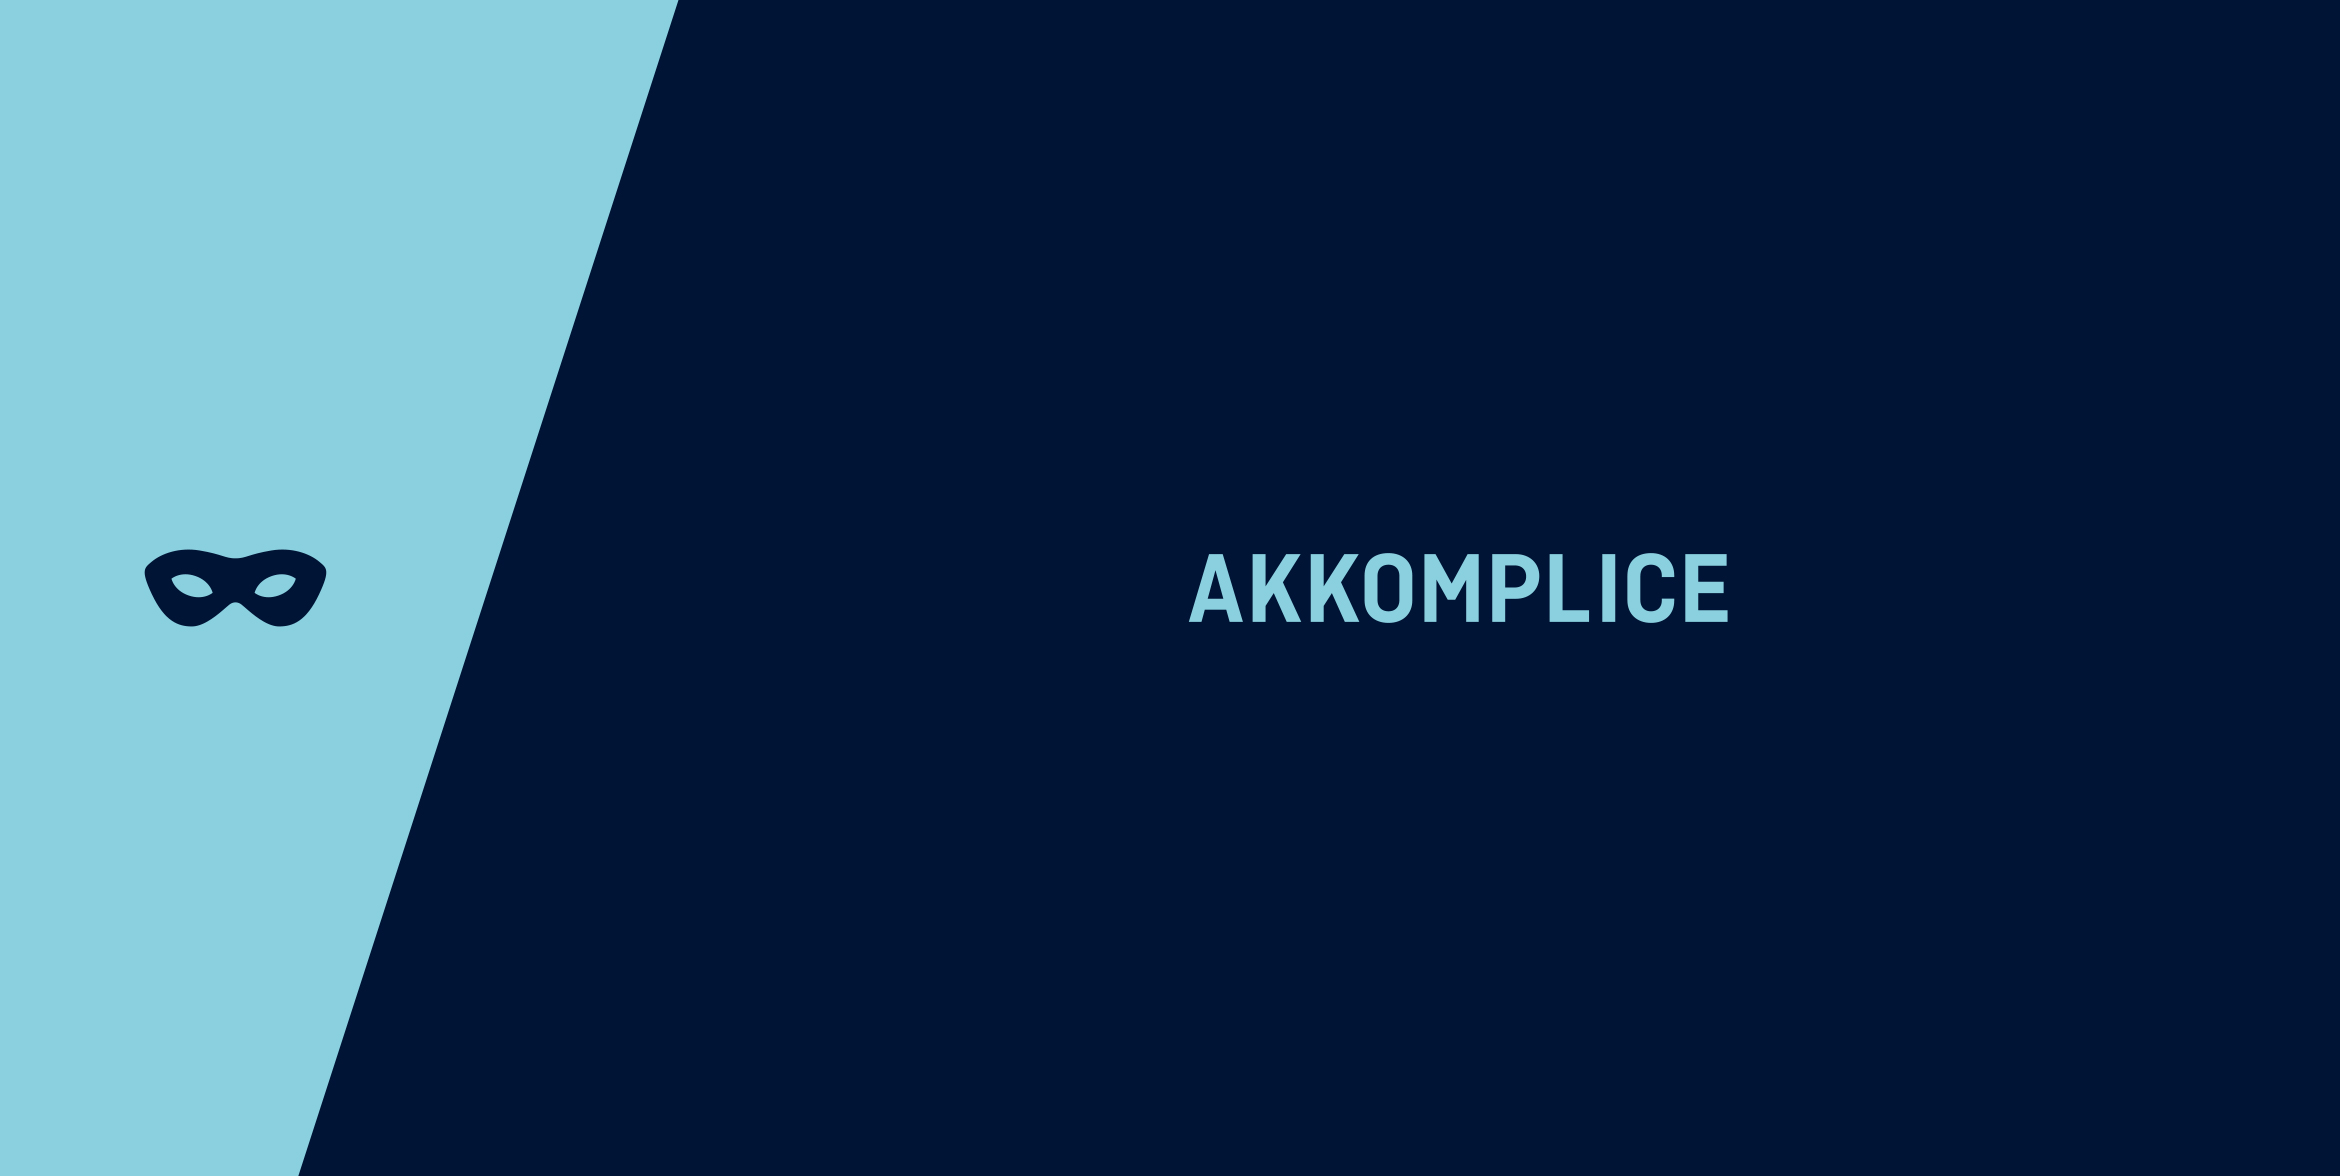 Akkomplice_brandmark5